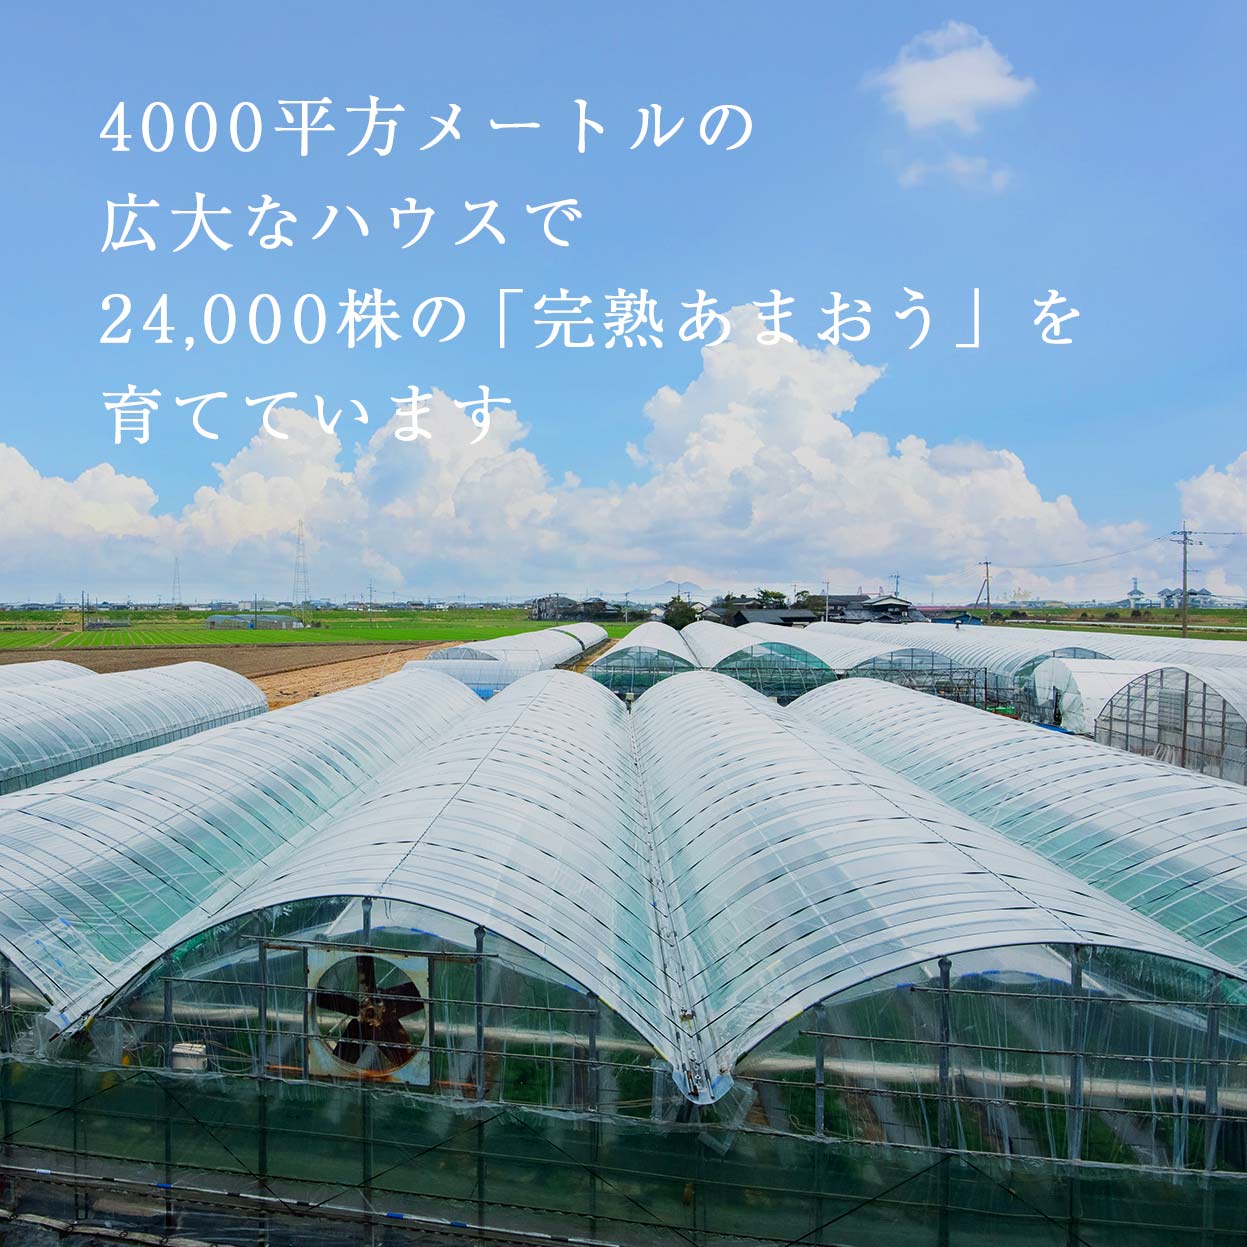 Đơn hàng trồng và thu hoạch đâu tây tại Kumamoto, Nhật Bản 